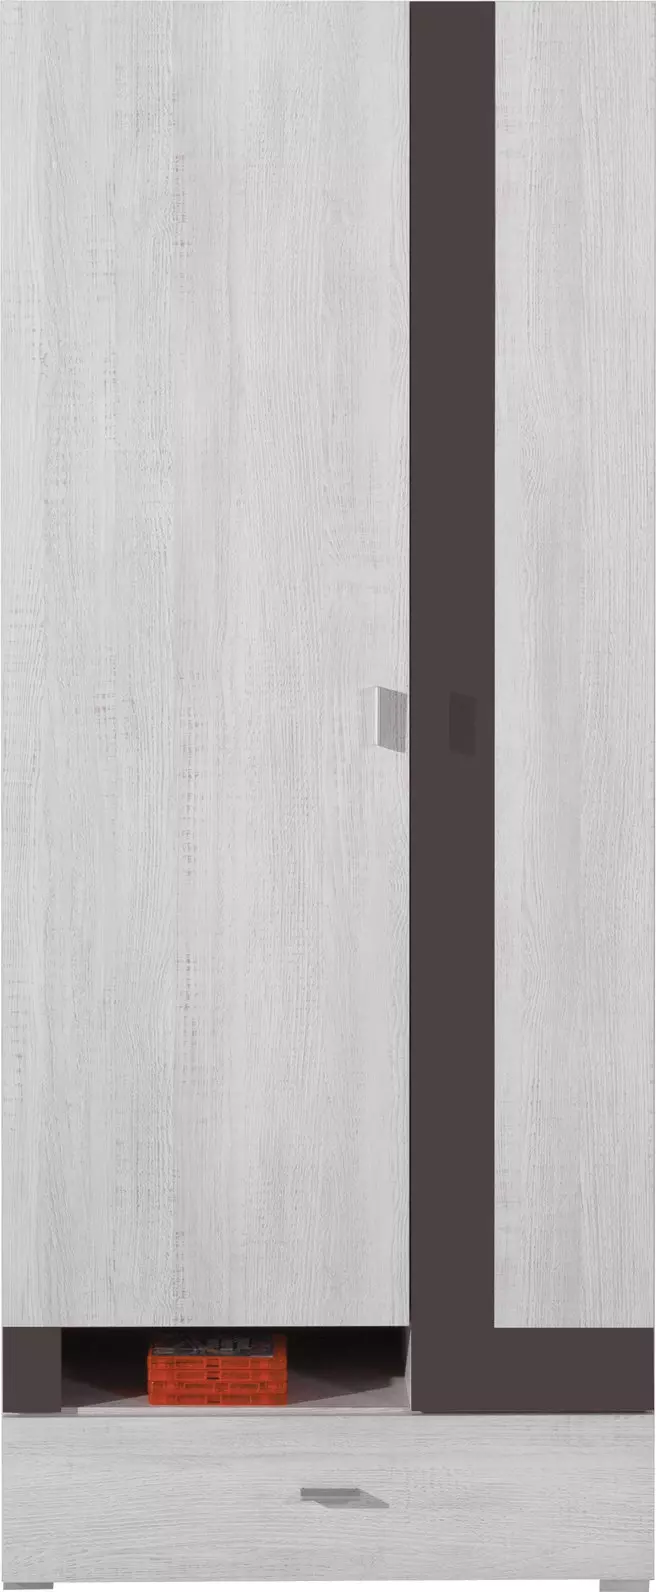 NEXT SYSTEM 3 akasztós szekrény fehér fenyő - föld barna színű, kétajtós, egyfiókos